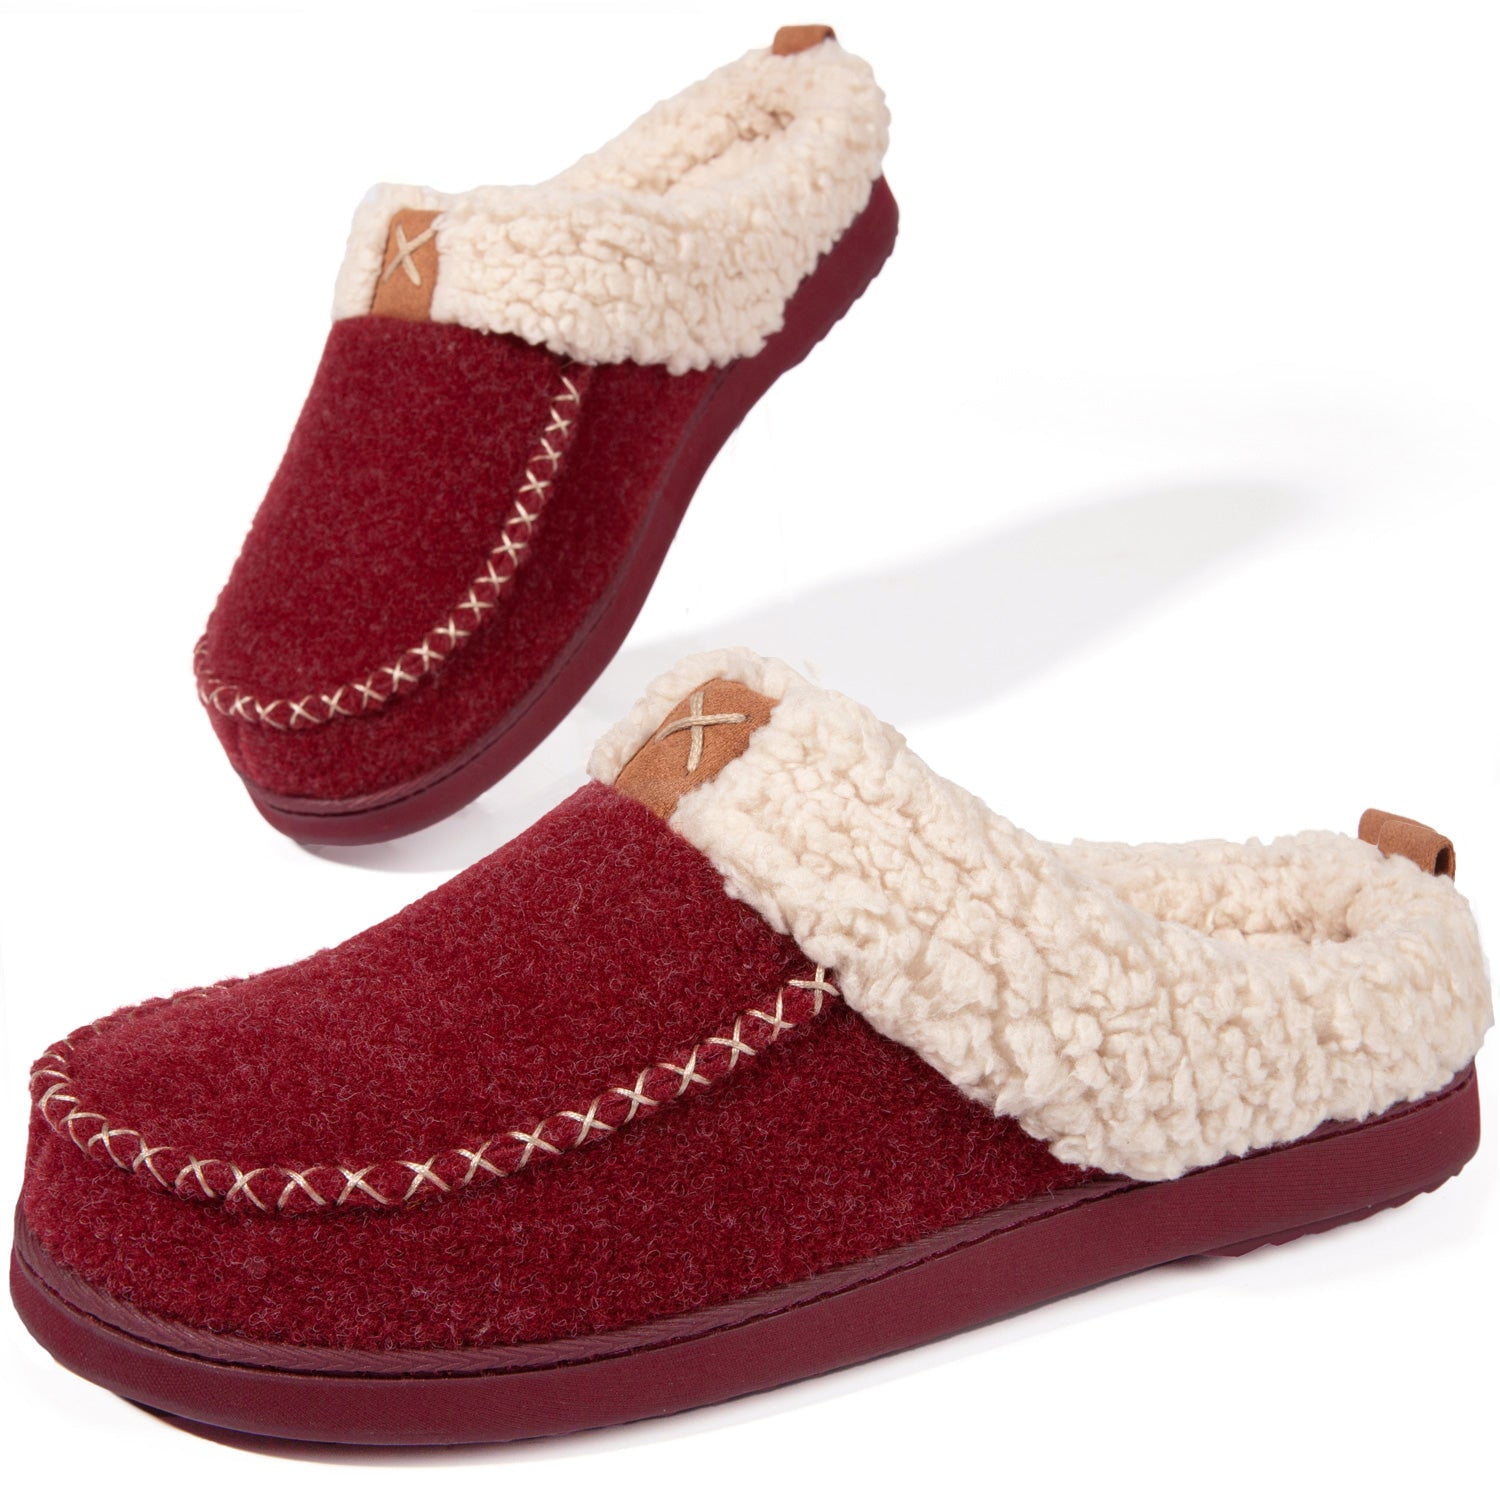 LongBay Women's Wool Felt Sherpa Memory Foam Fuzzy Slippers with Plush ...